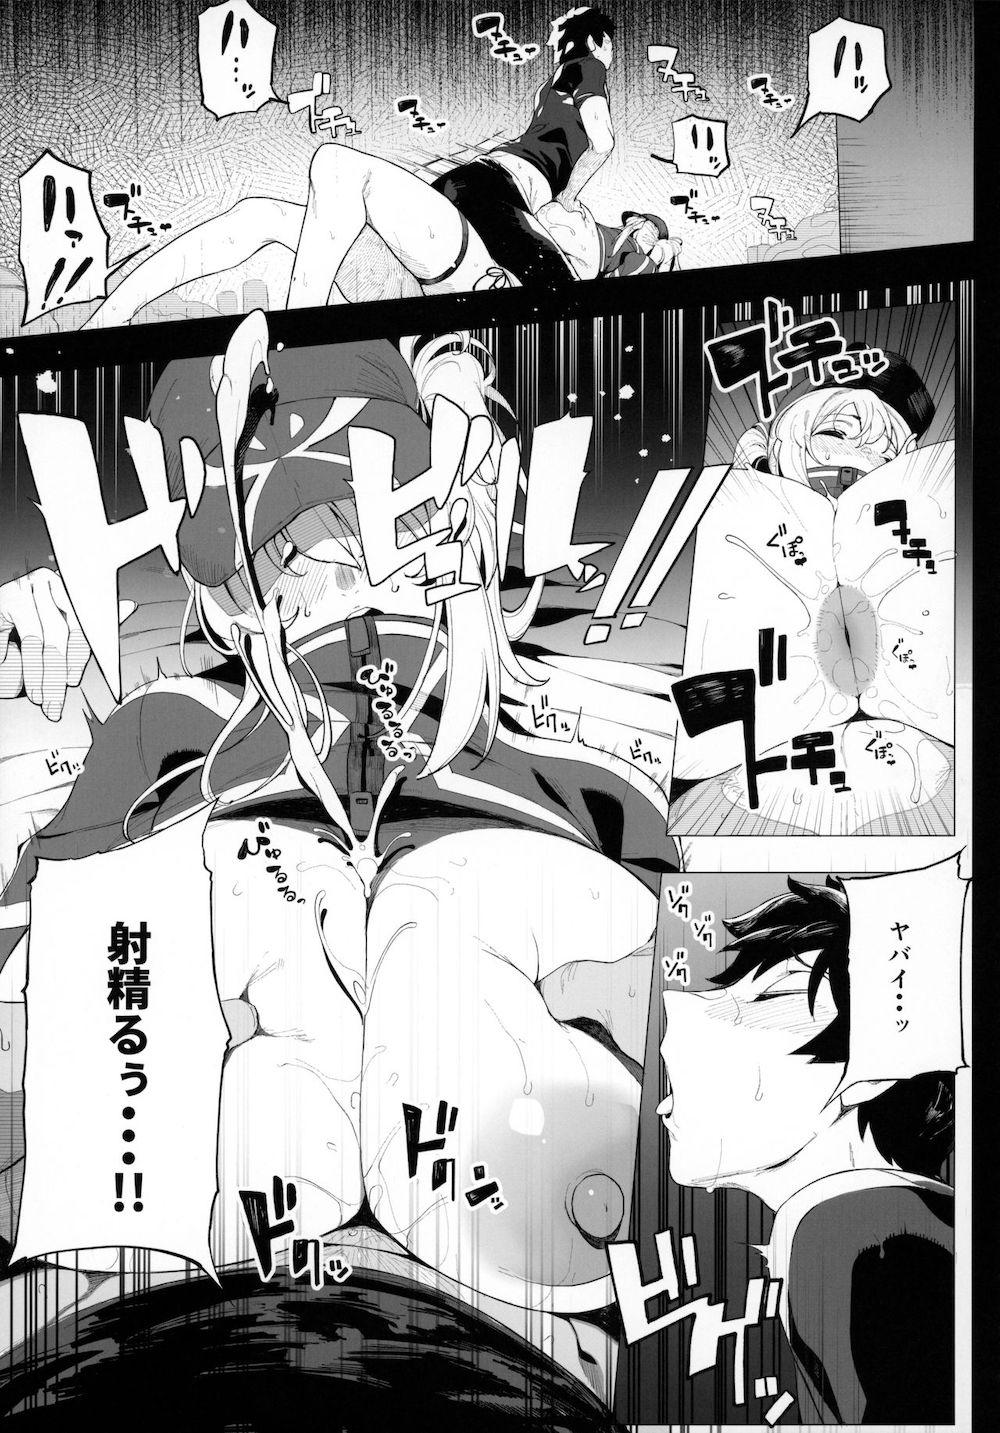 【Fate/Grand Order】酔い潰れて眠ってしまった謎のヒロインXXが欲情してカラダを触ってくるマスターに指導として女性優位な泥酔エッチ16